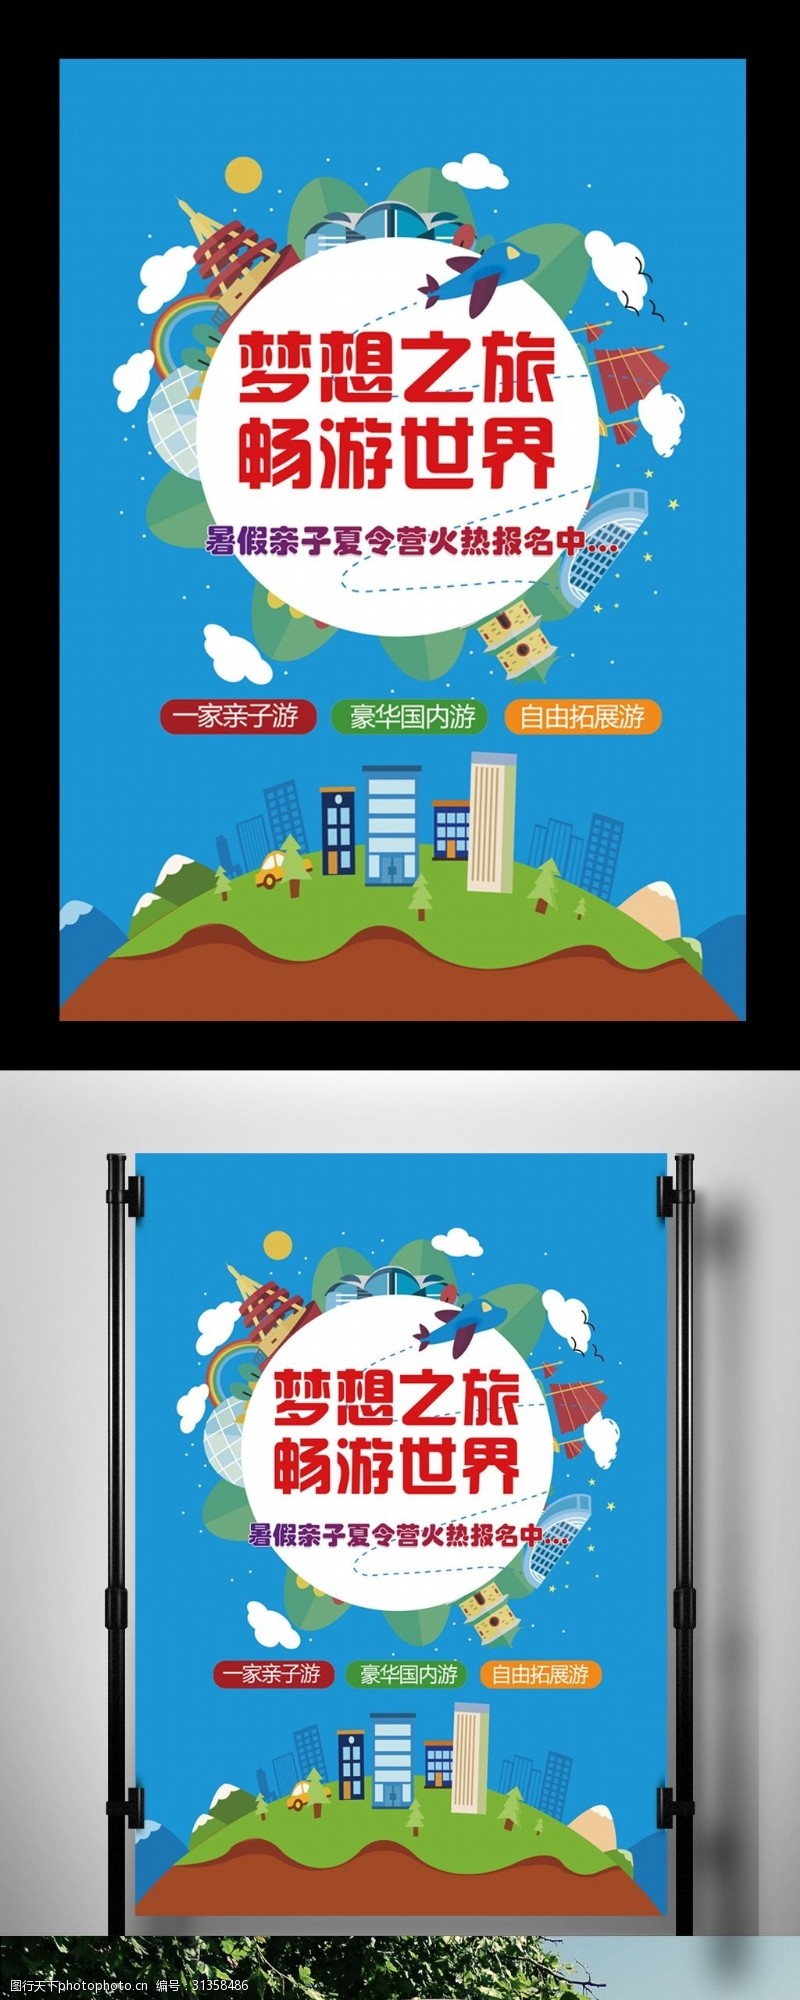 春节旅游蓝色简约旅游宣传海报设计